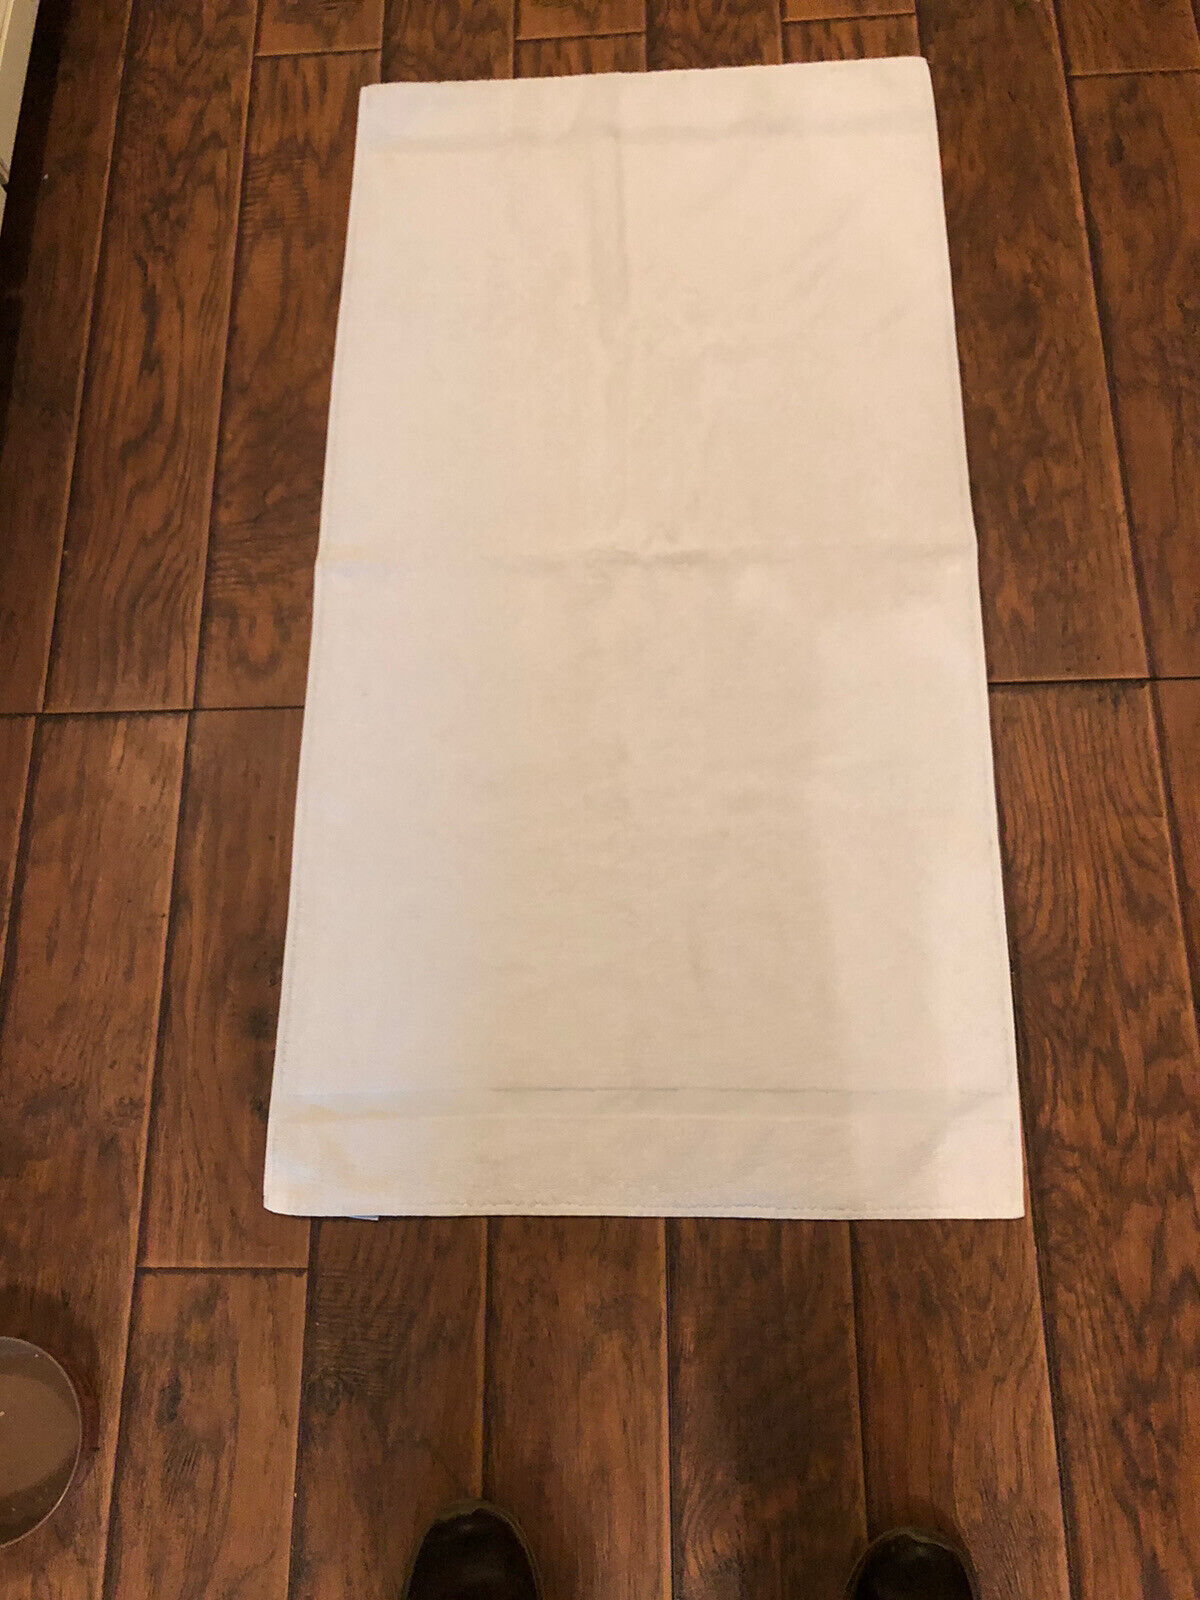 Vintage BIBB bath towel 25” x 46” white 